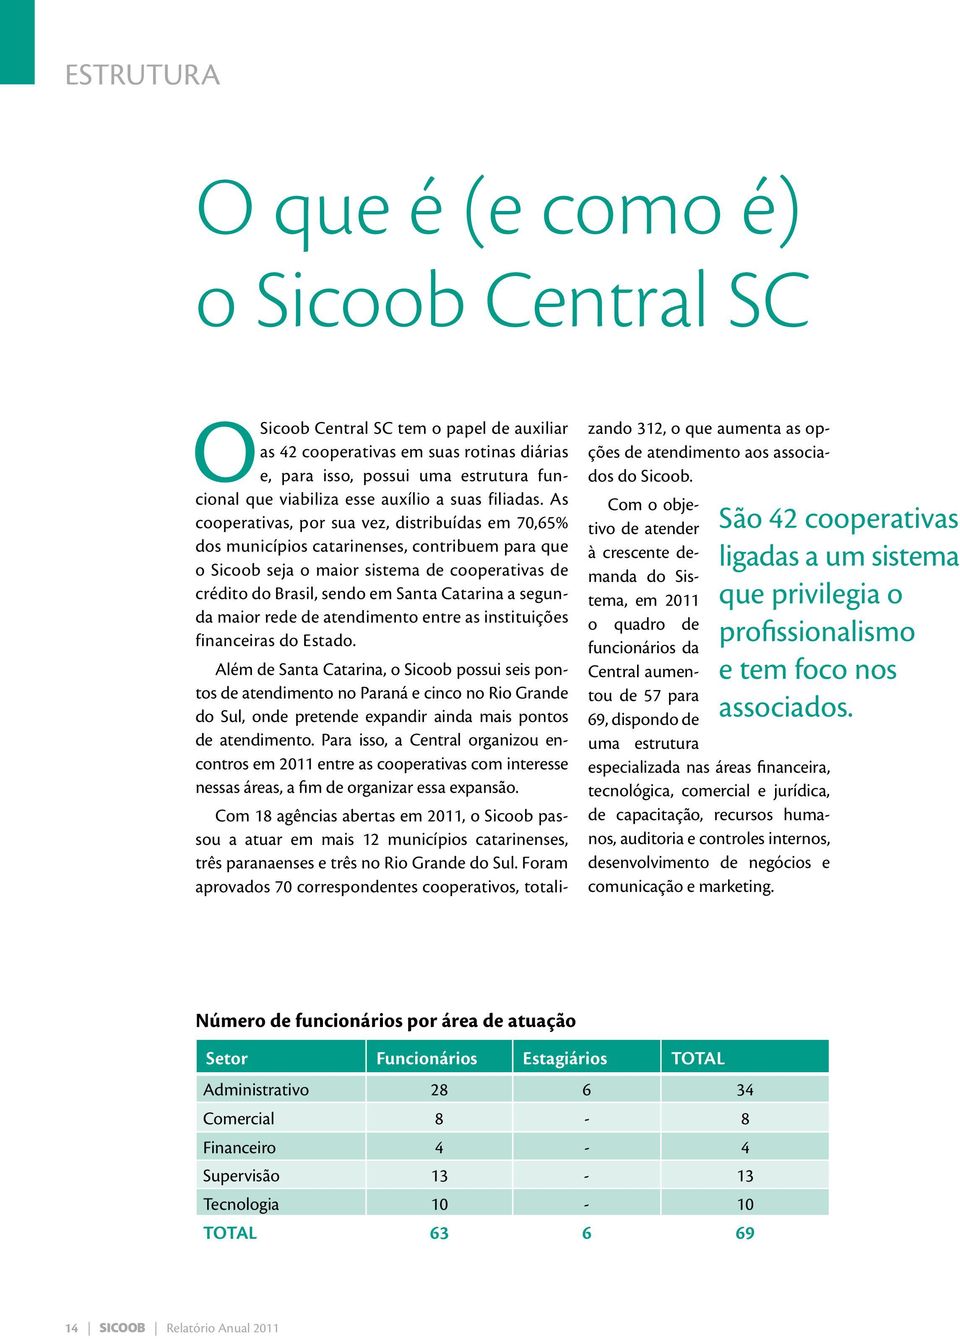 As cooperativas, por sua vez, distribuídas em 70,65% dos municípios catarinenses, contribuem para que o Sicoob seja o maior sistema de cooperativas de crédito do Brasil, sendo em Santa Catarina a